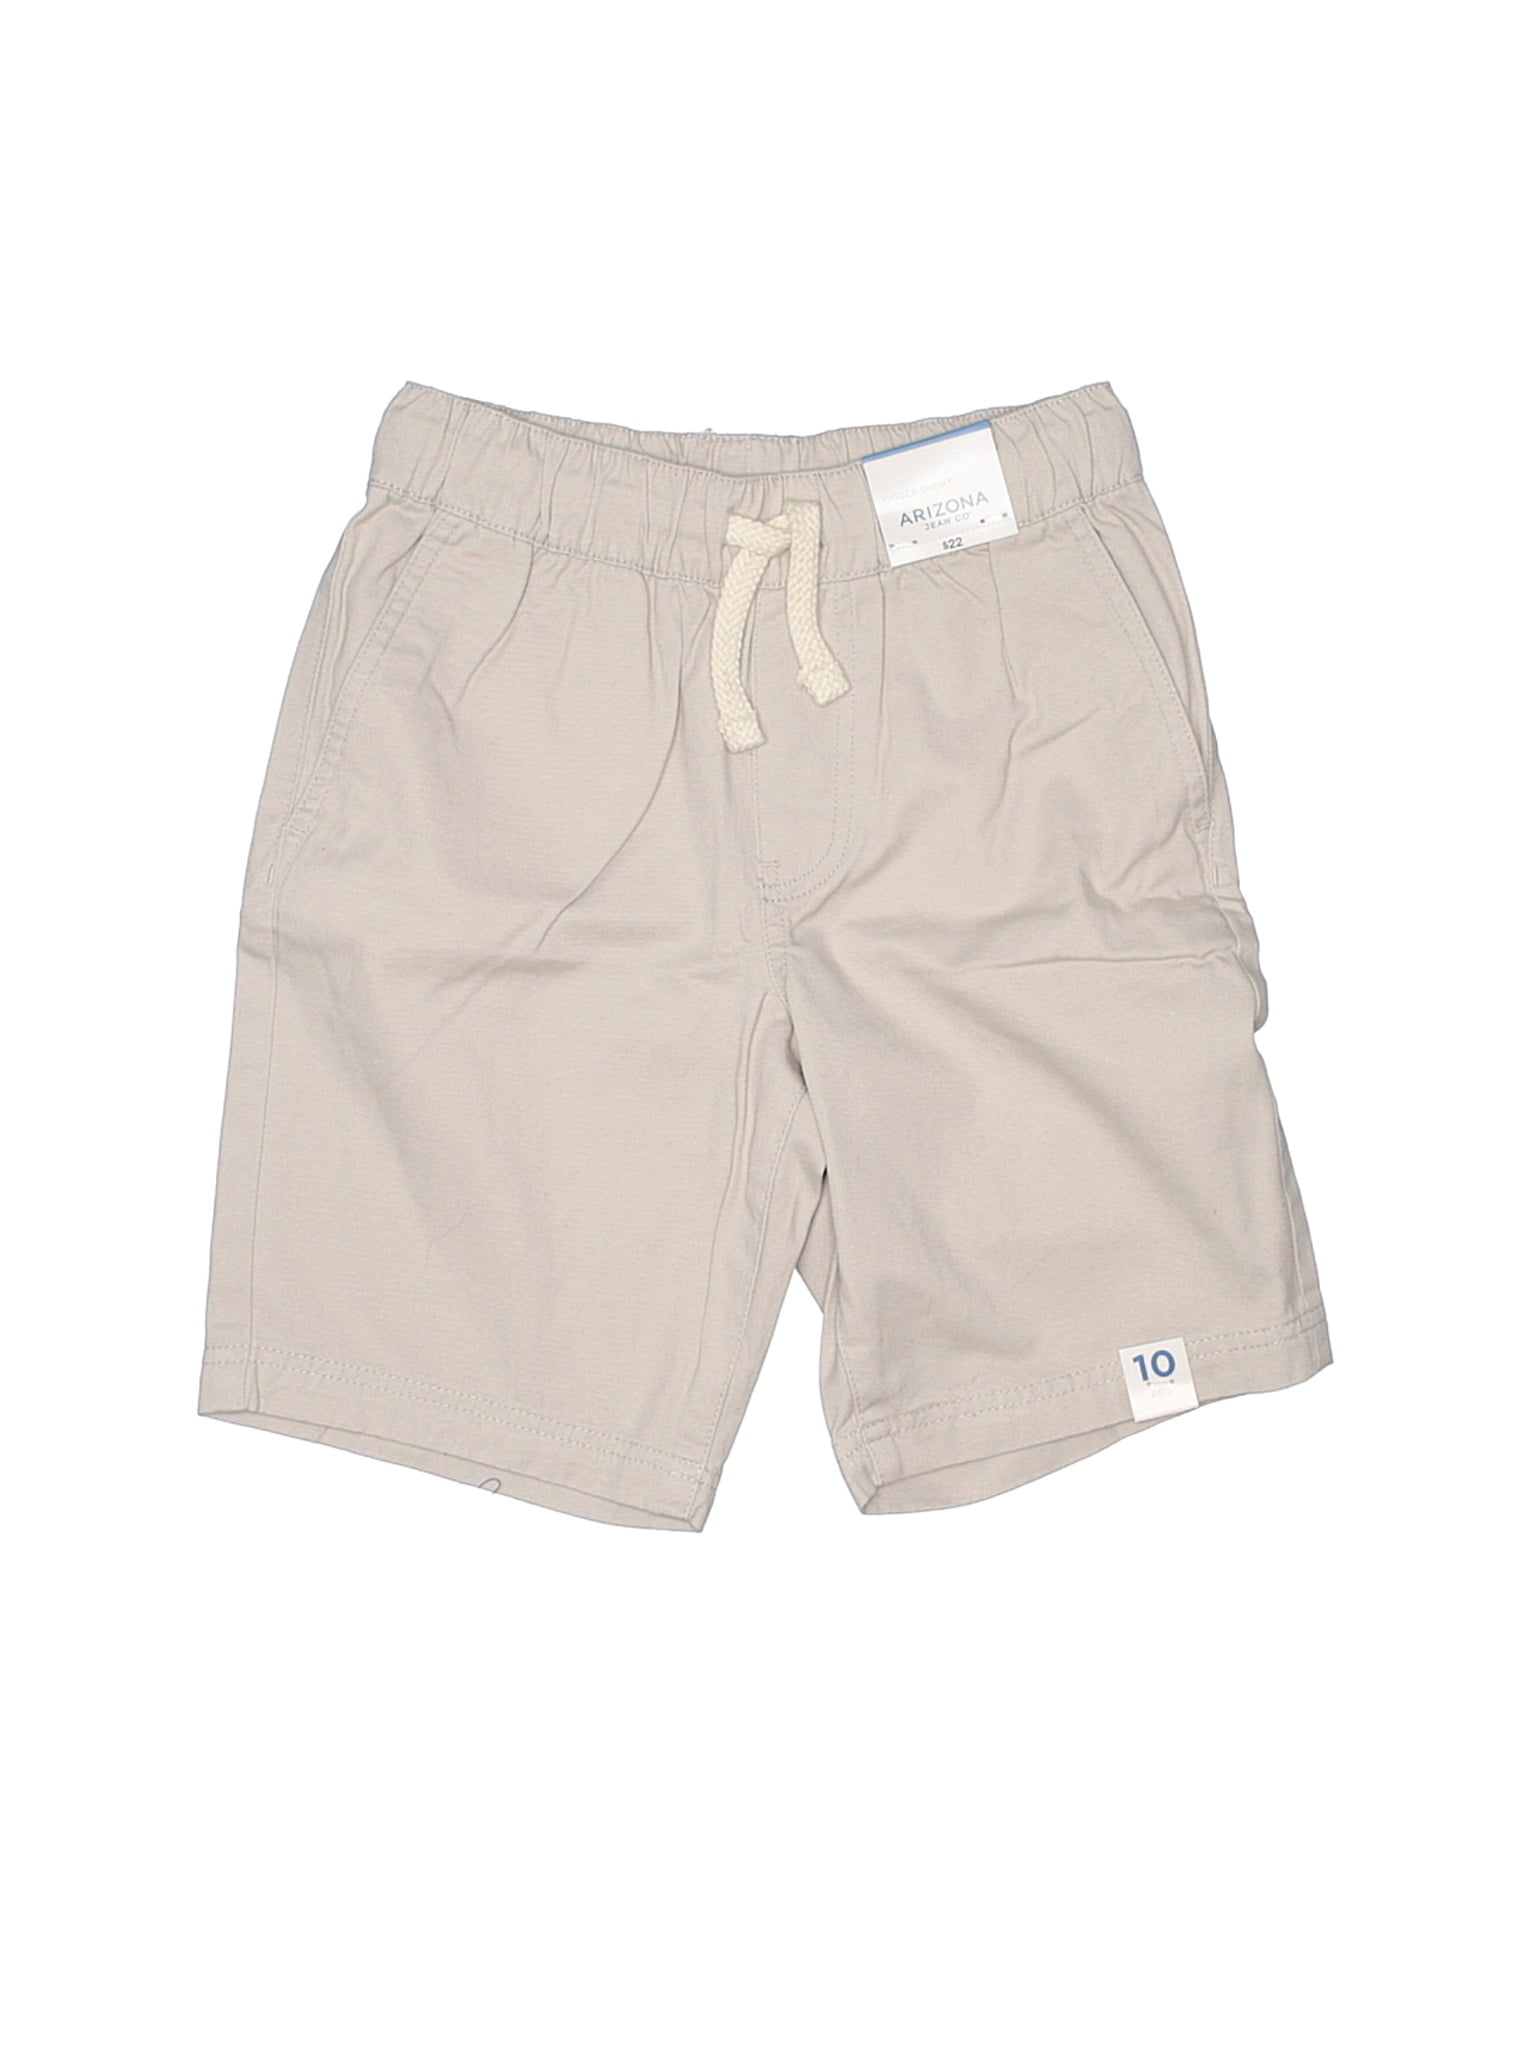 arizona jean co shorts